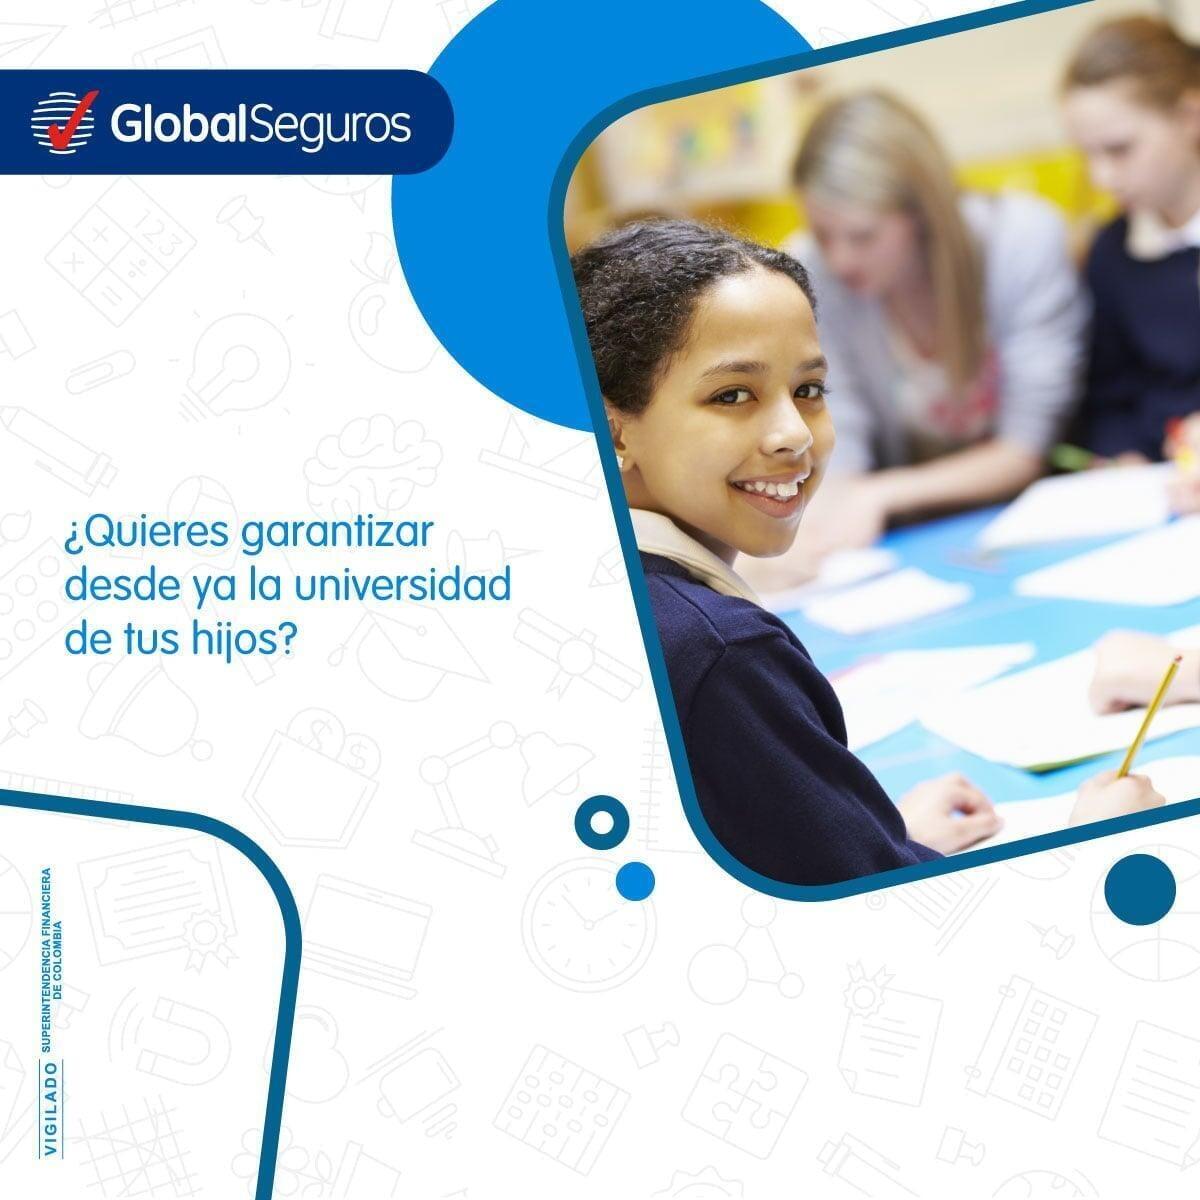 Asegura el futuro de tus hijos: Los beneficios del seguro educativo de Global Seguros en Colombia